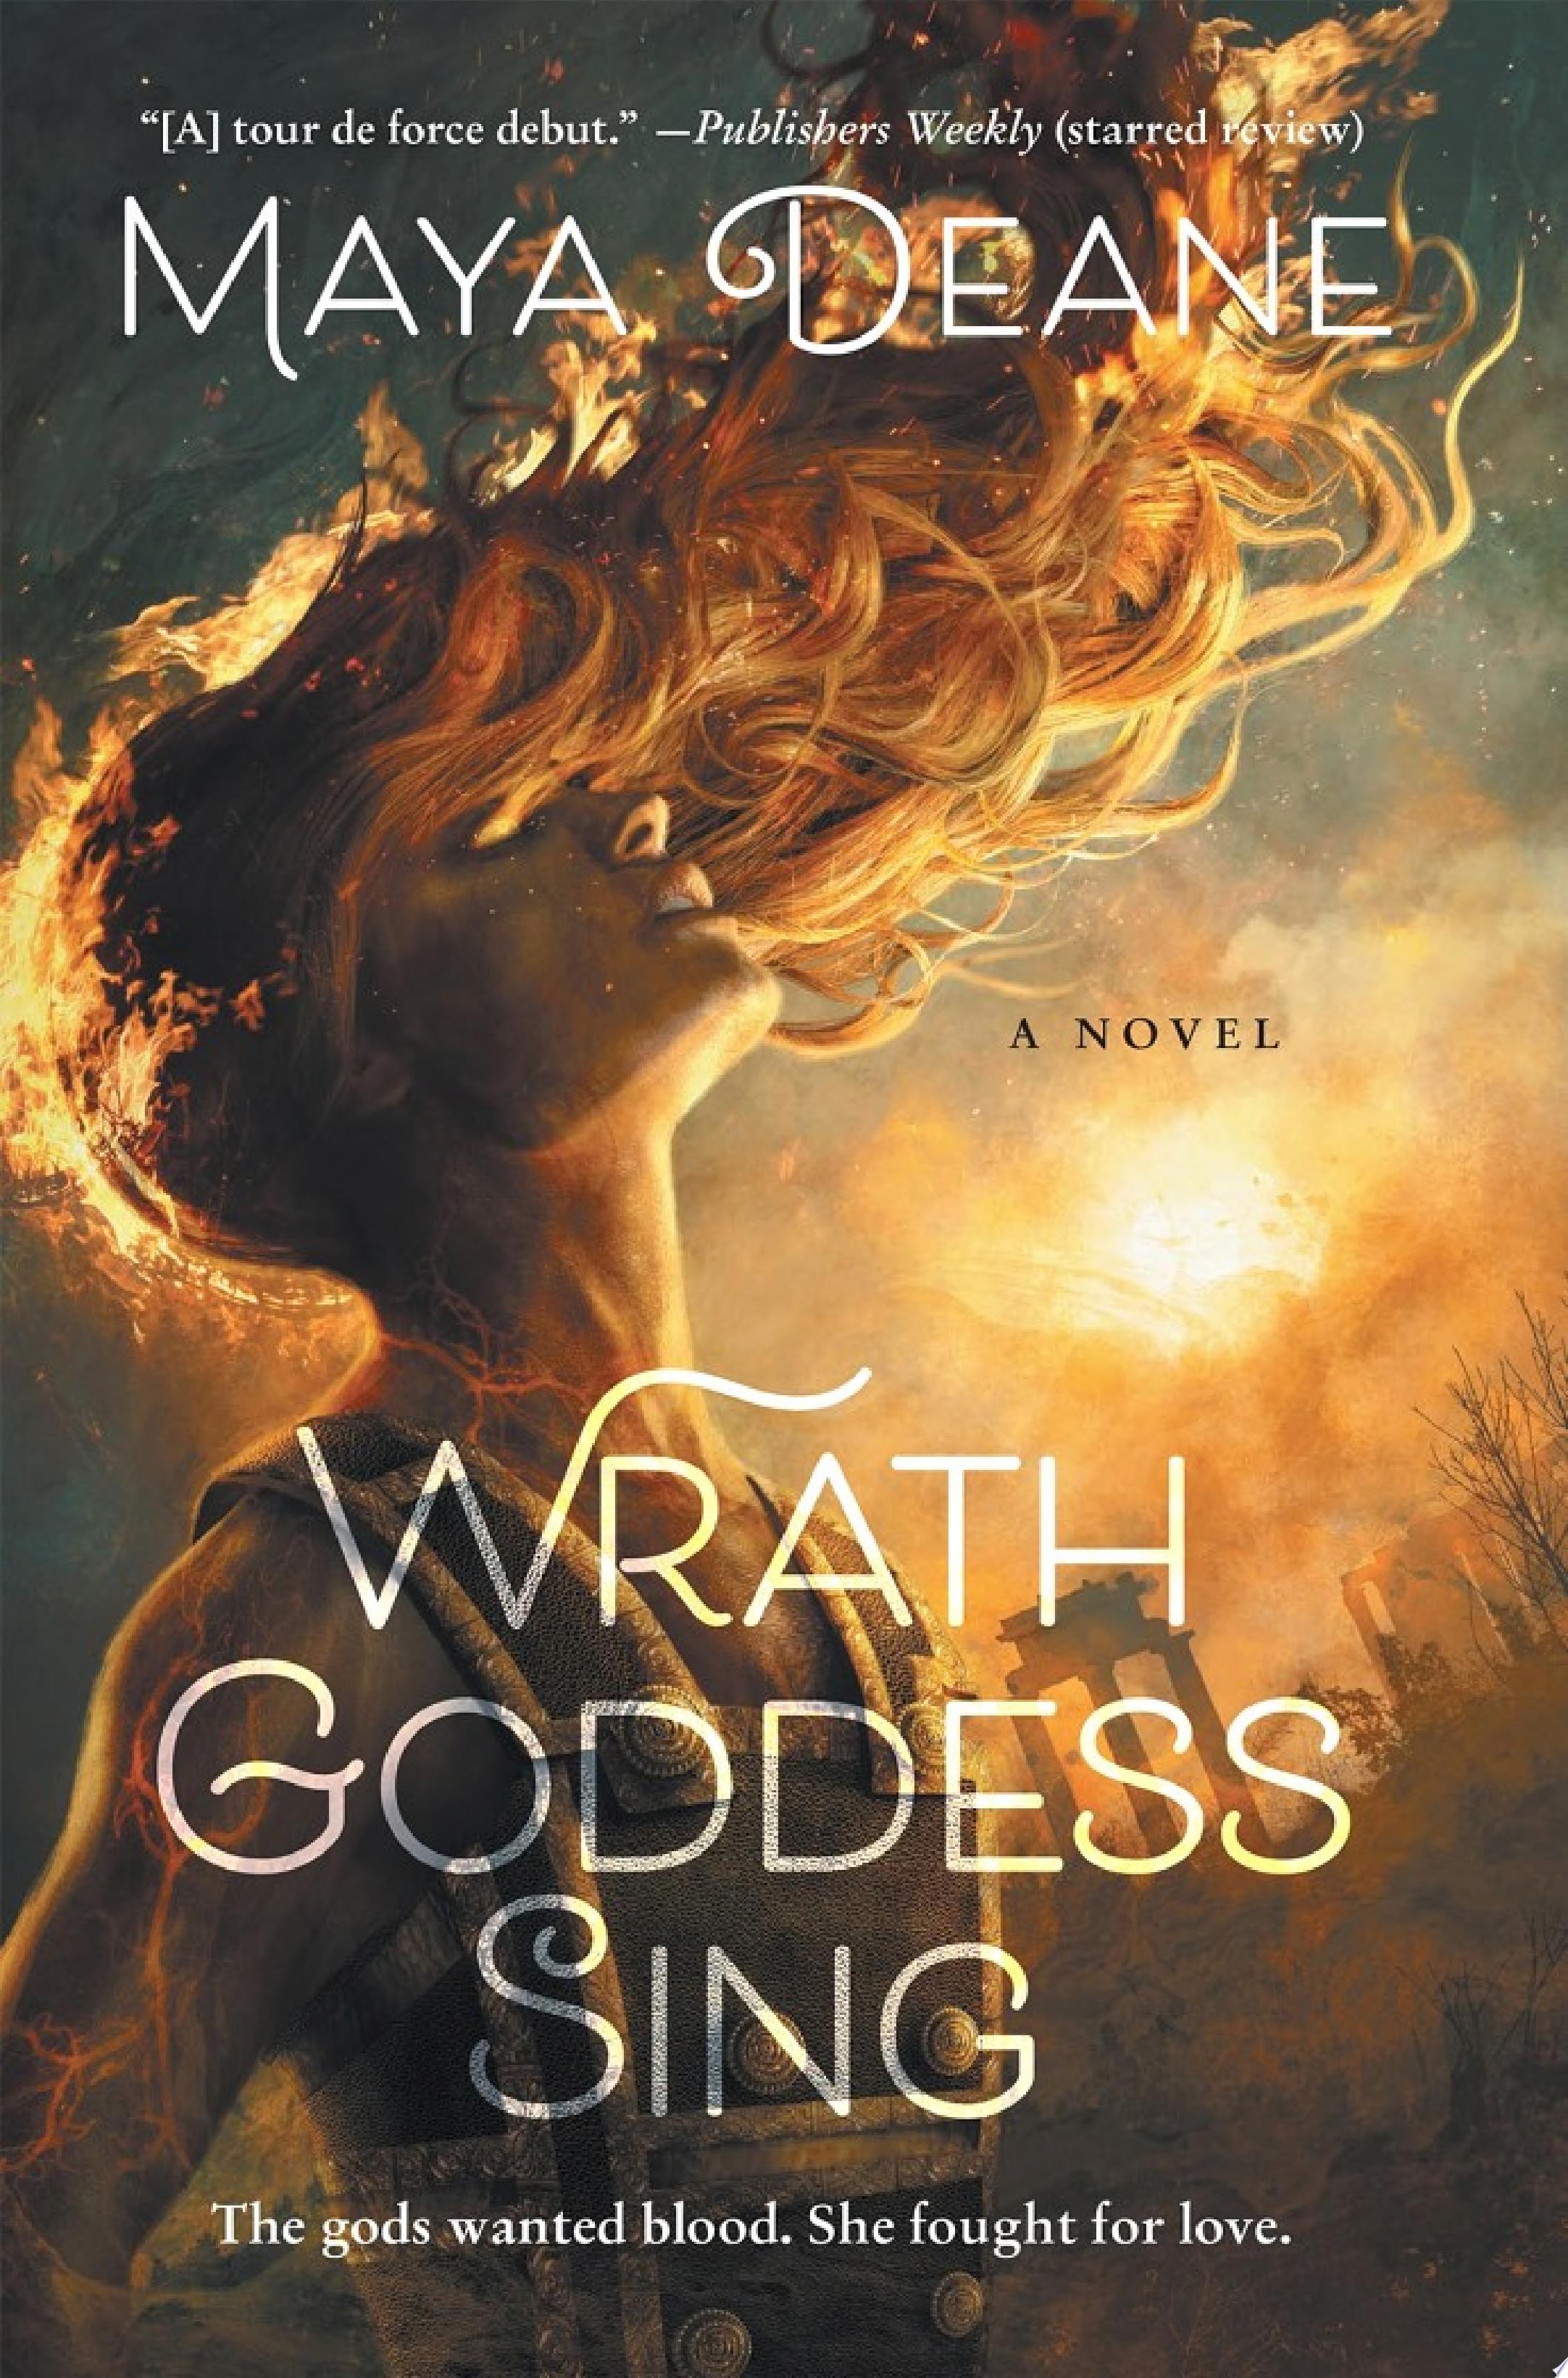 Image for "Wrath Goddess Sing"